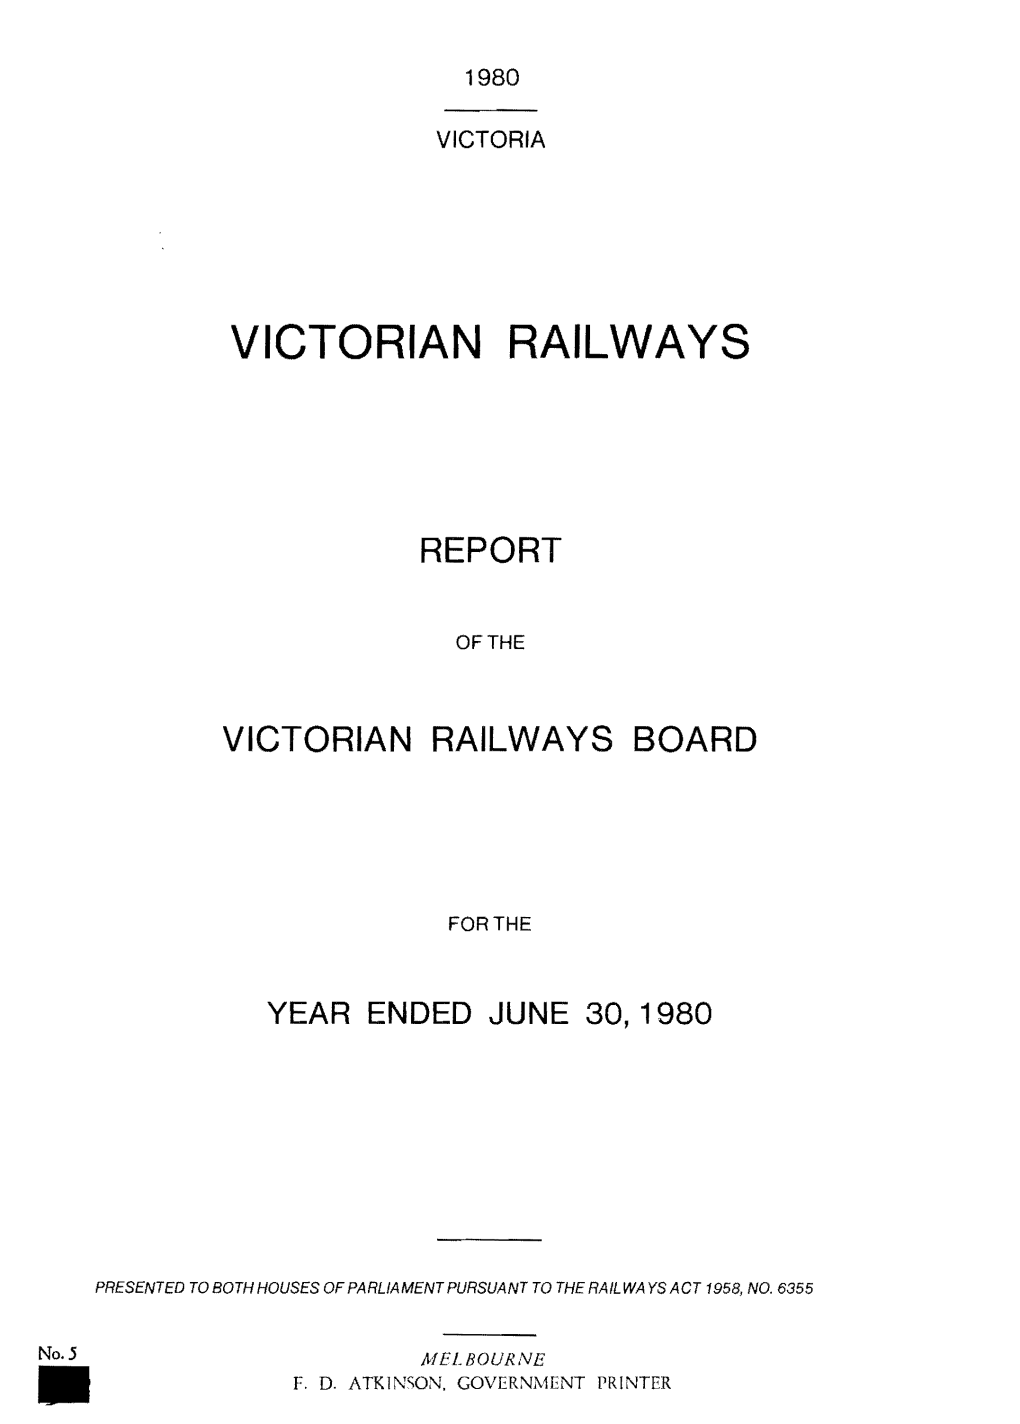 VR Annual Report 1980